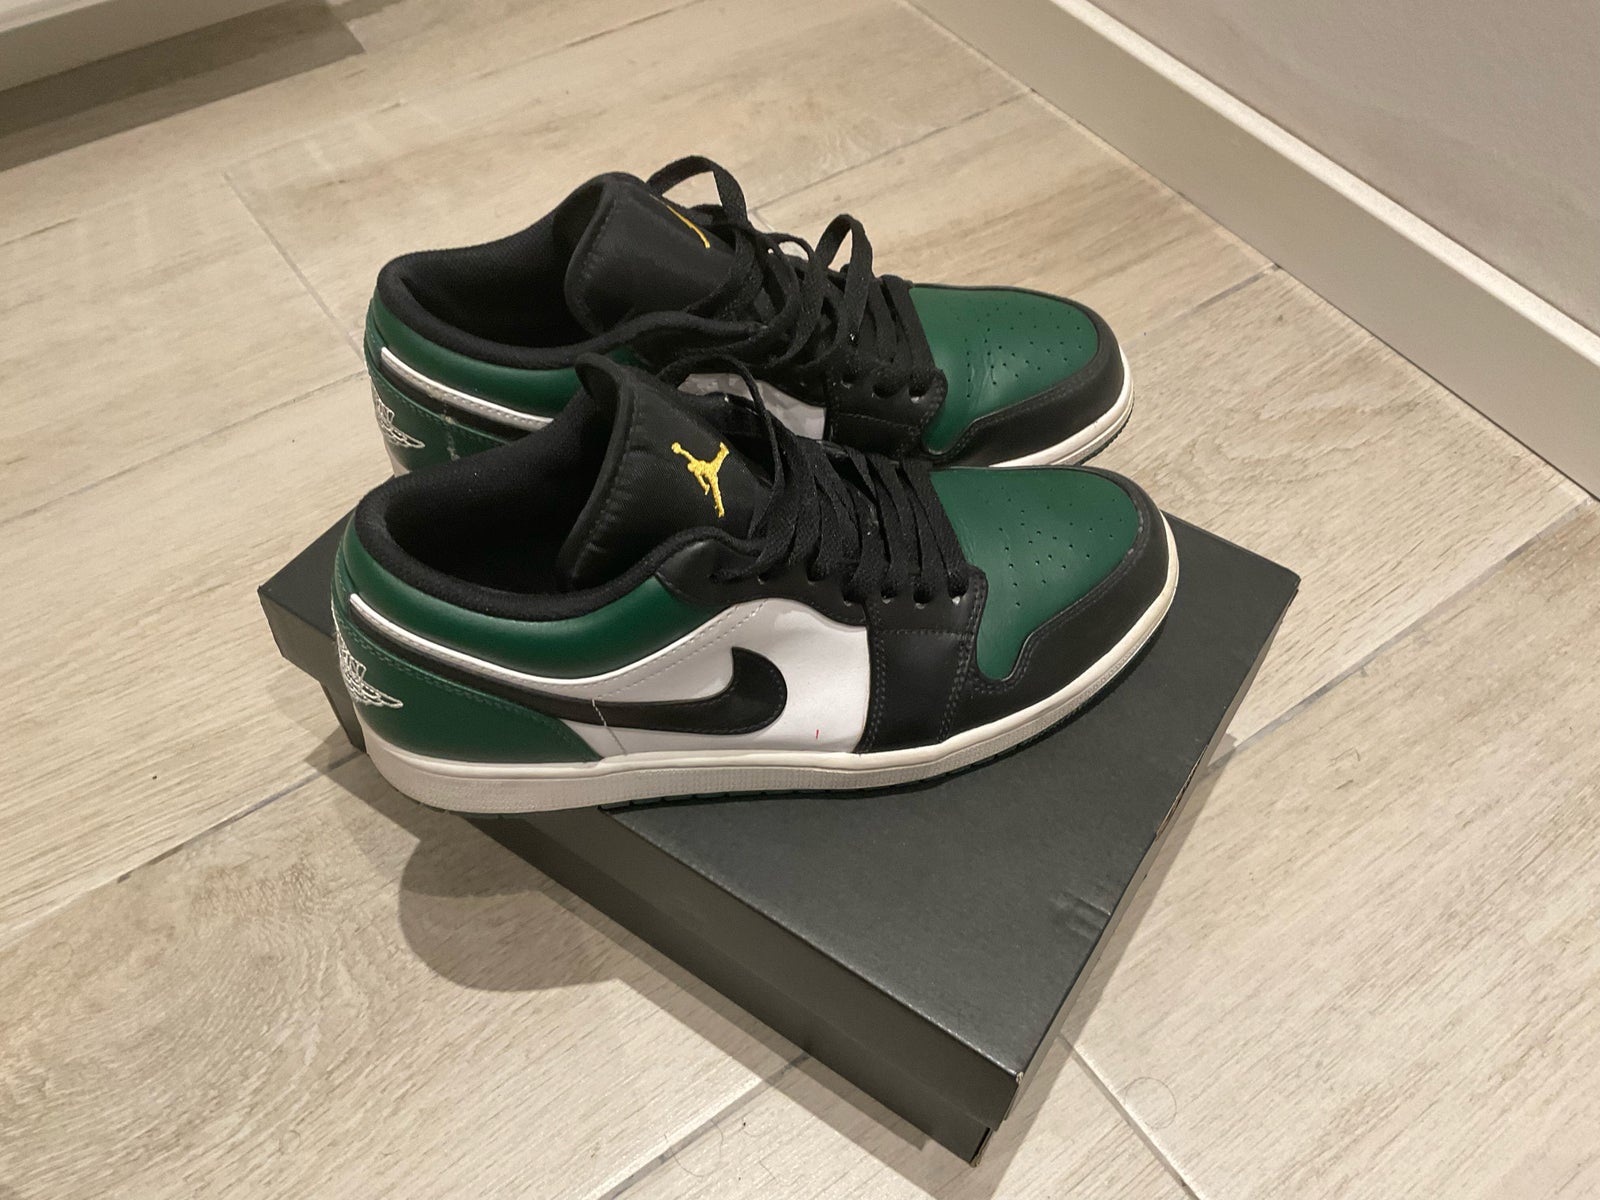 Sneakers, Air Jordan 1 low “ green toe” , str. 43